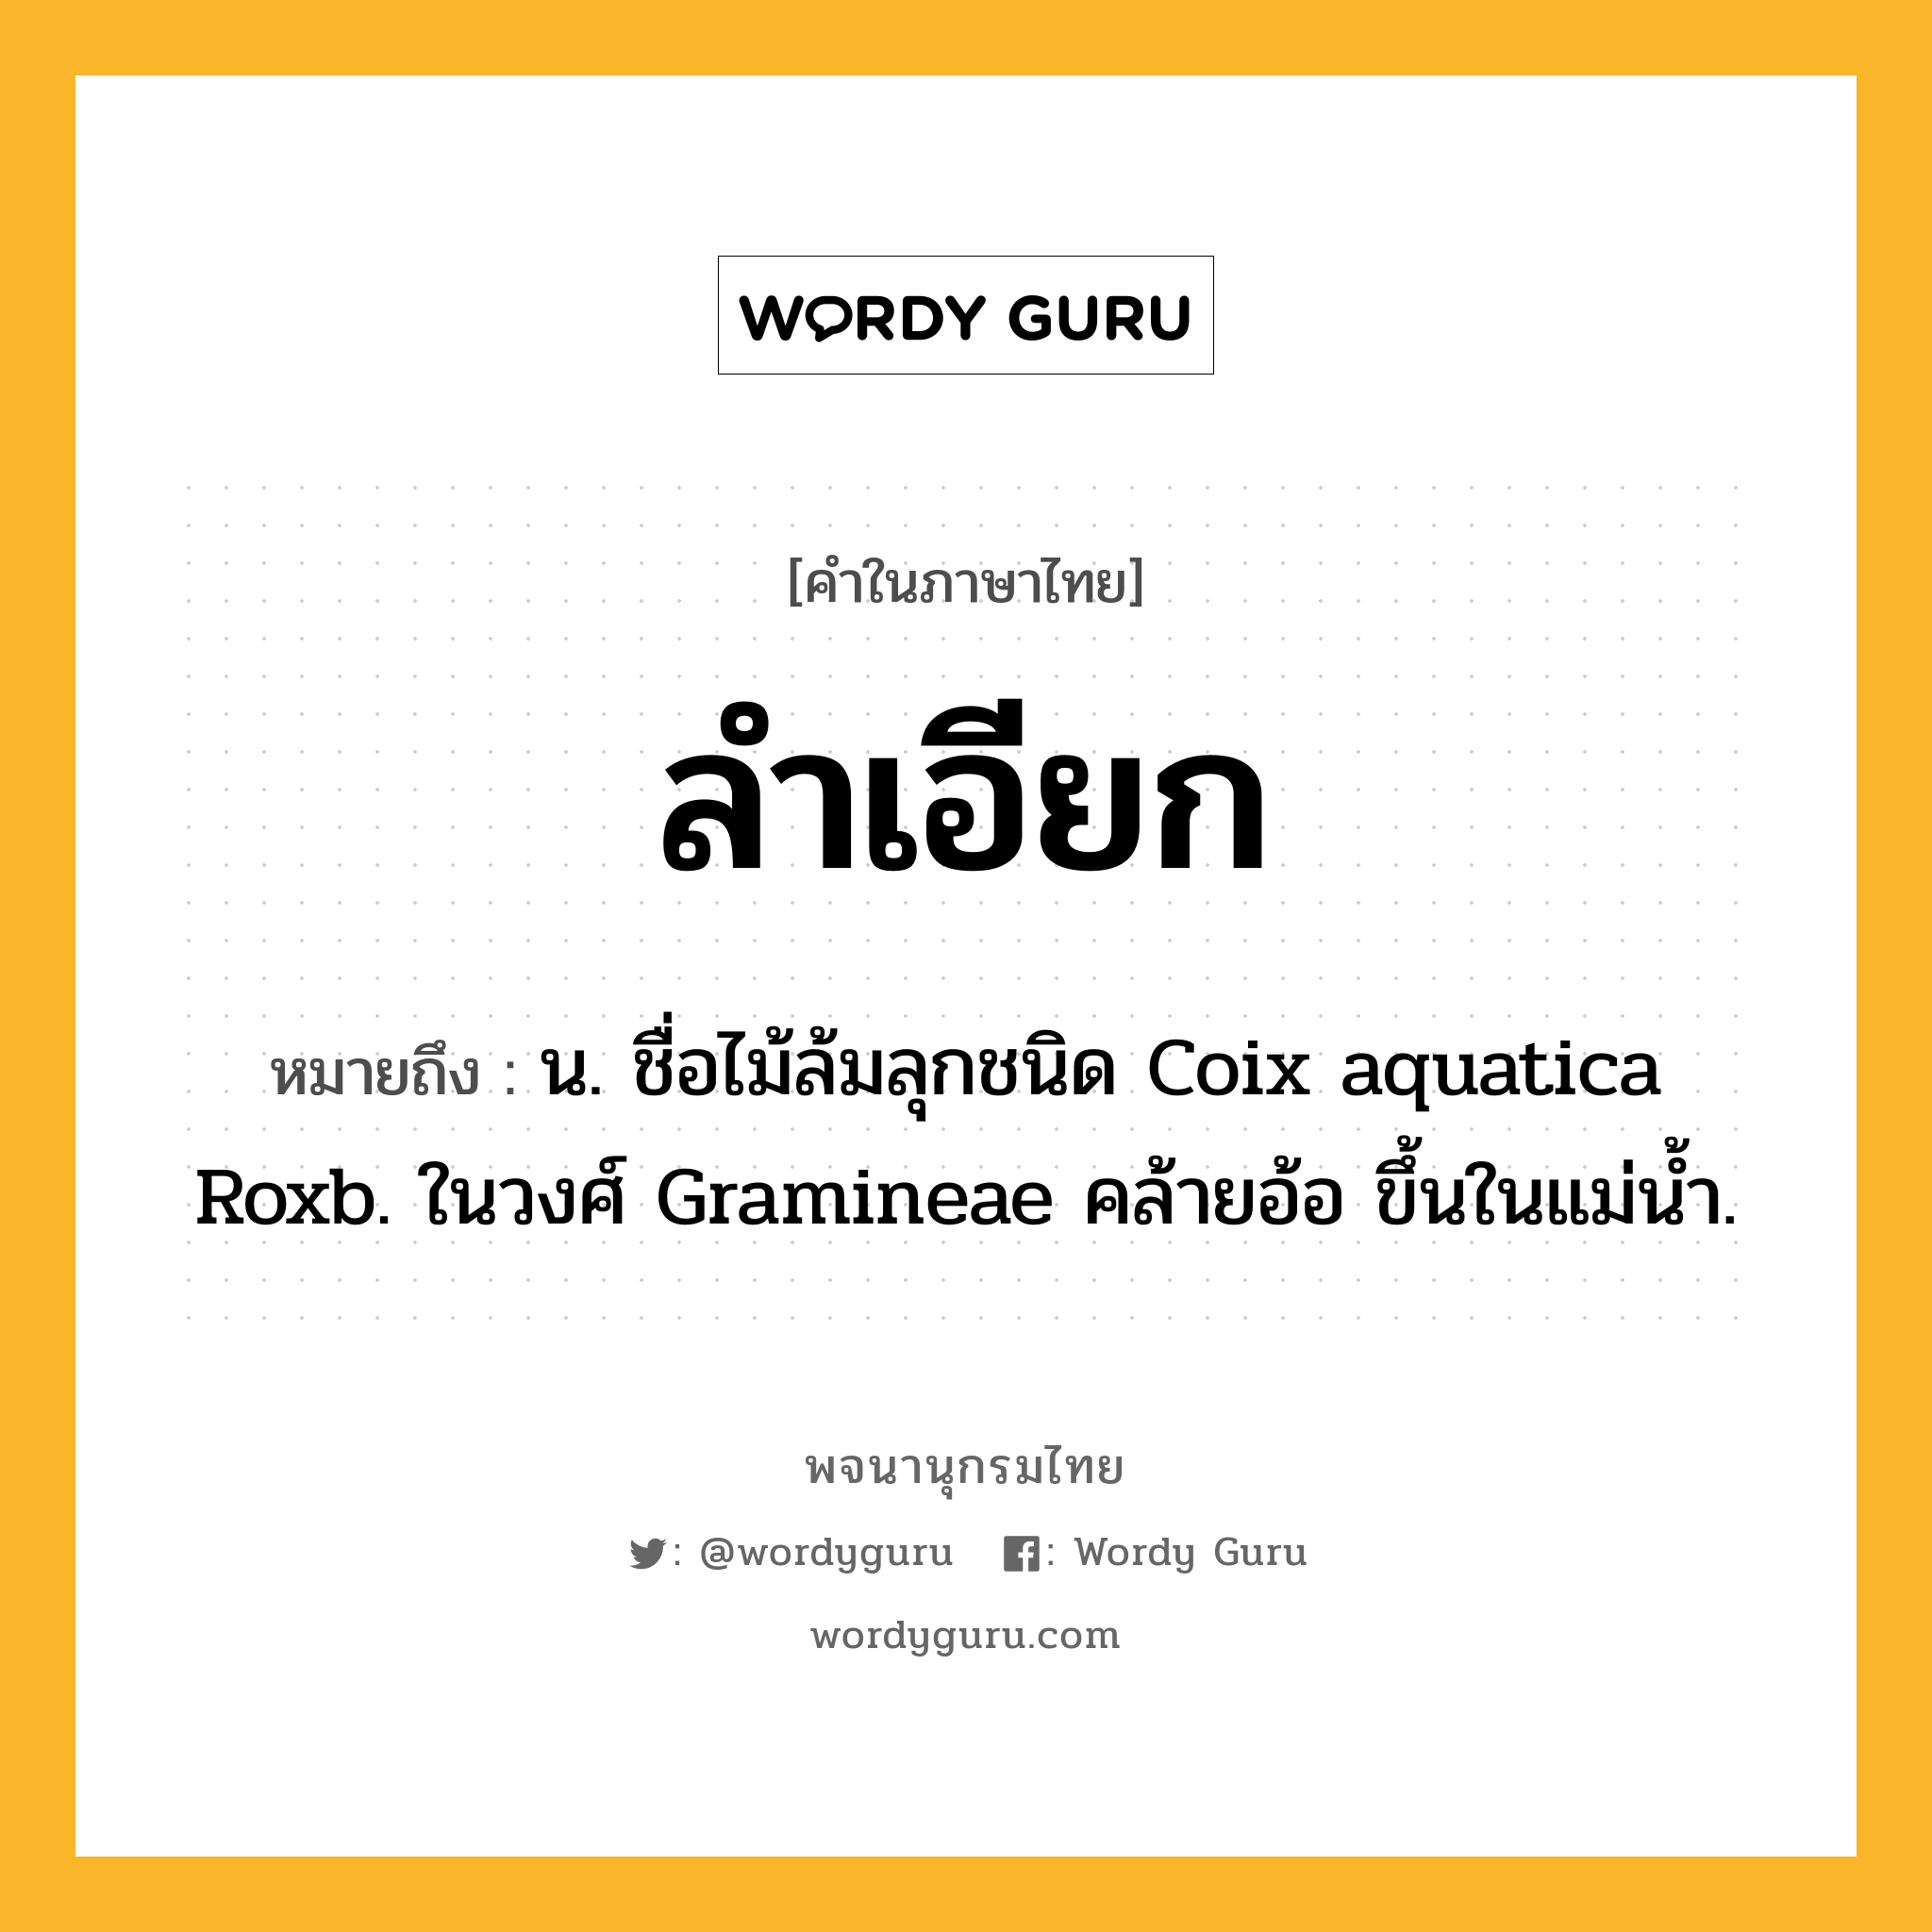 ลำเอียก ความหมาย หมายถึงอะไร?, คำในภาษาไทย ลำเอียก หมายถึง น. ชื่อไม้ล้มลุกชนิด Coix aquatica Roxb. ในวงศ์ Gramineae คล้ายอ้อ ขึ้นในแม่นํ้า.